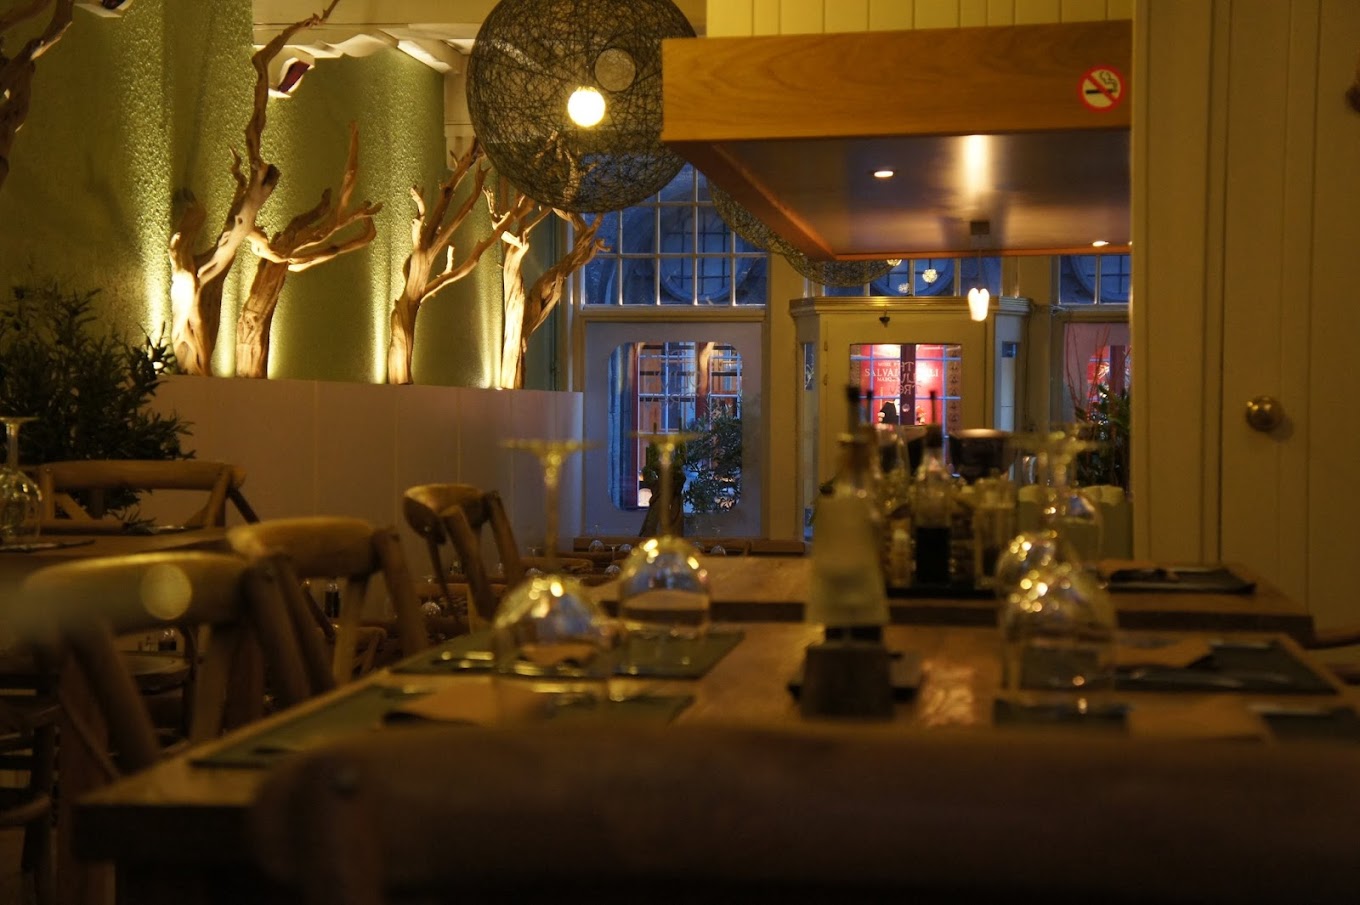 The Olive Tree Brugge - Kid-Friendly Restaurants in Bruges